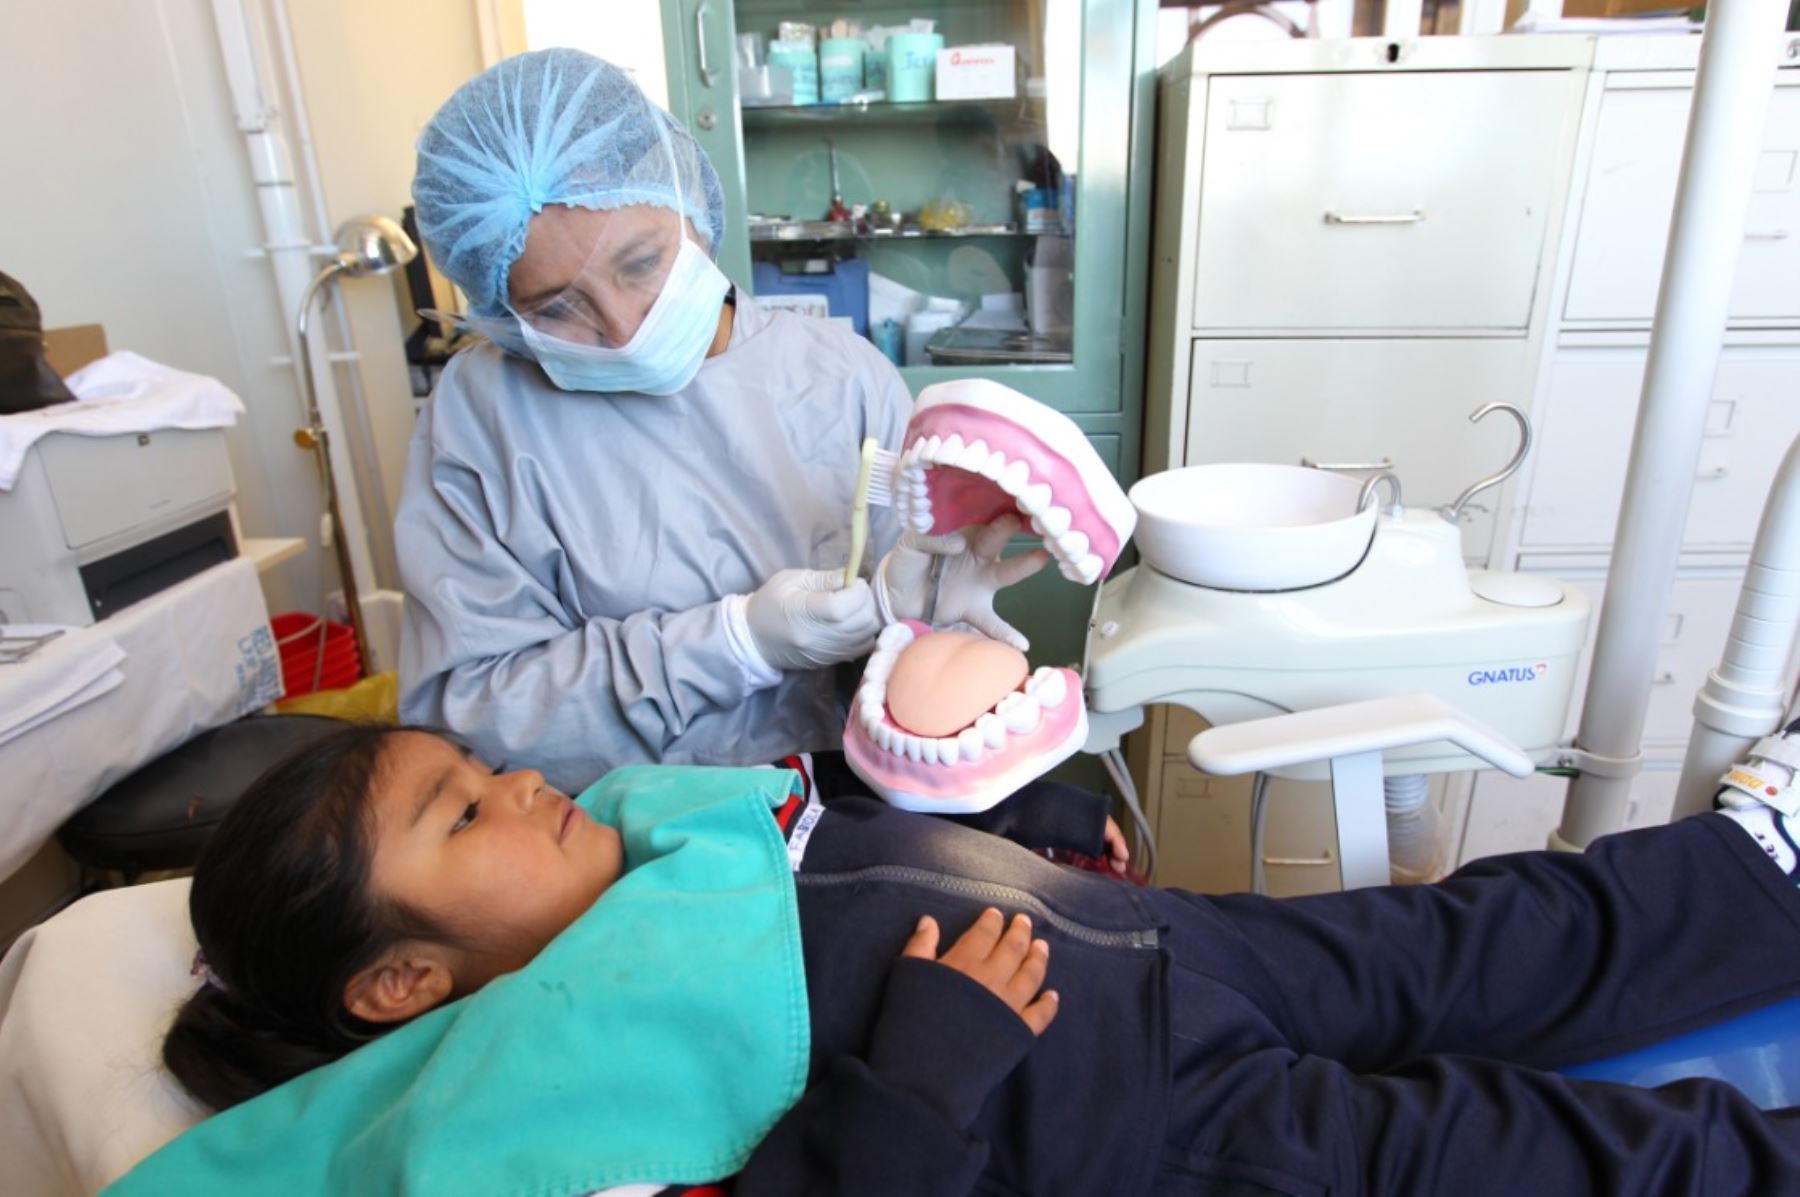 Golosinas y falta de higiene bucal incrementan caries en niños en edad escolar